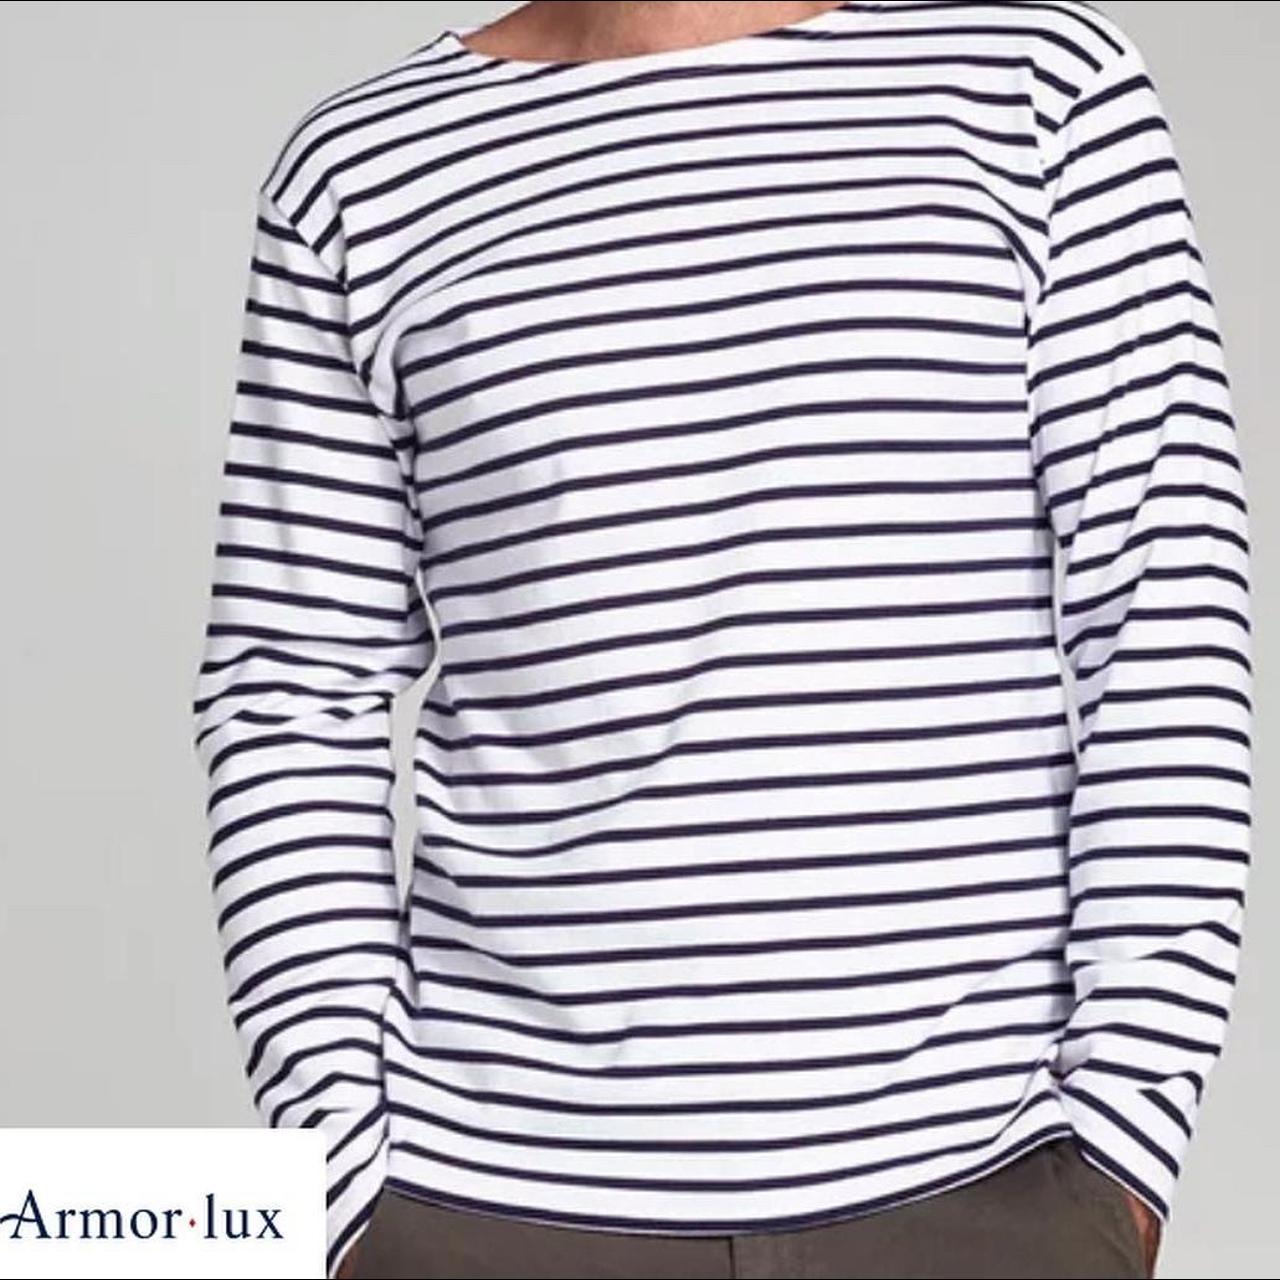 Armor Lux Men's Shirt (3)